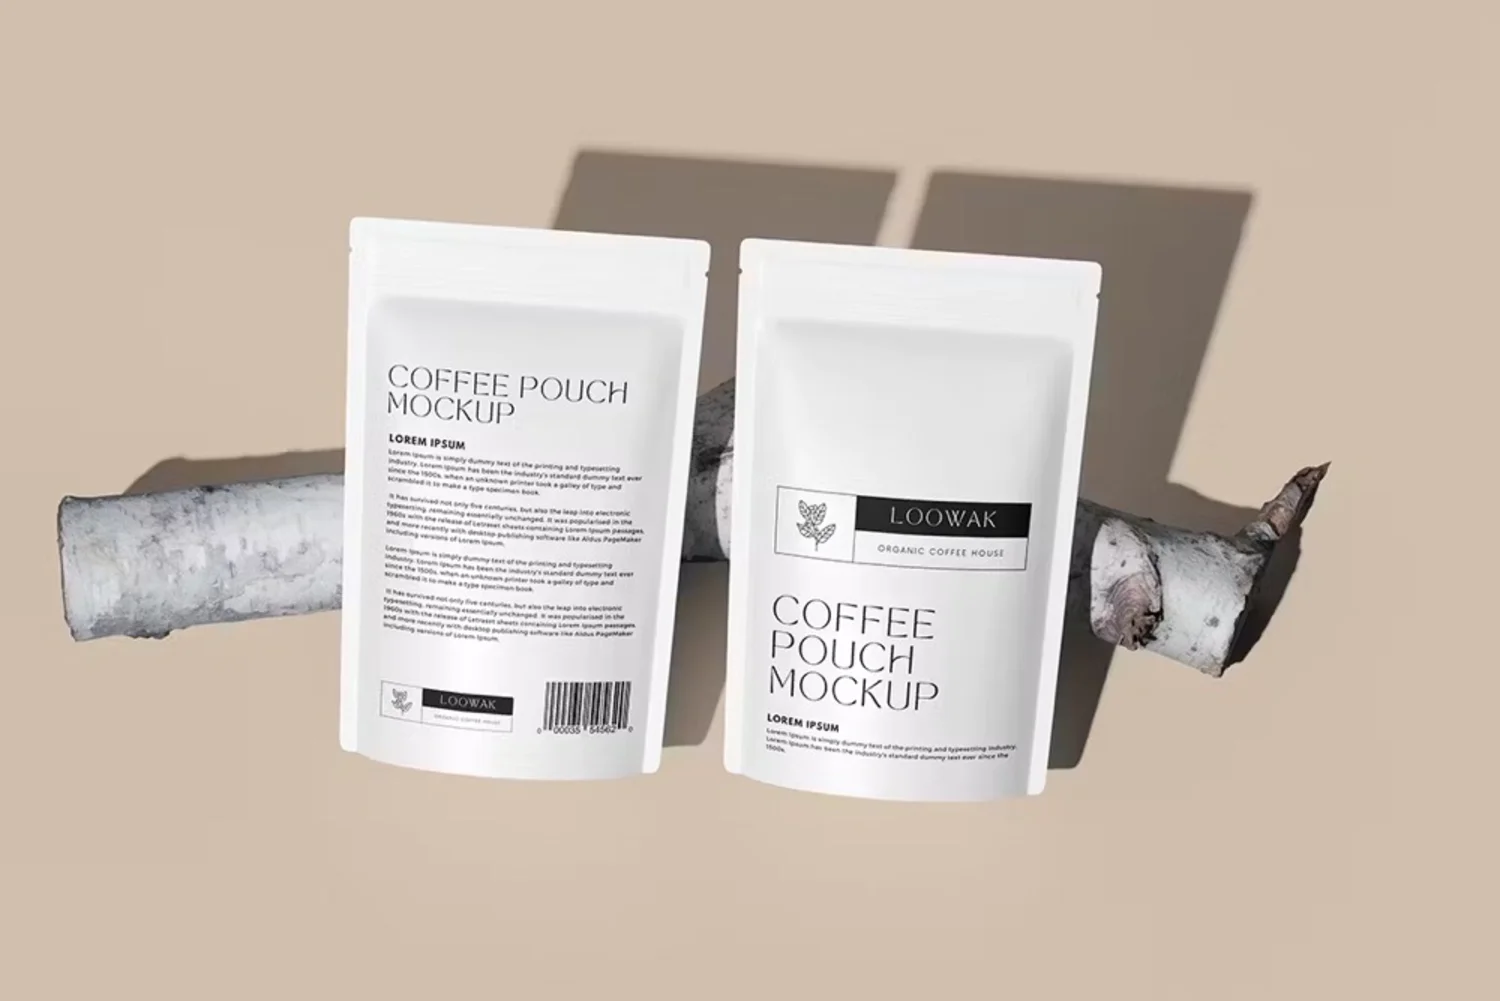 5011 6款自立咖啡袋茶叶袋模型袋身品牌展示设计贴图ps包装样机素材模板 Coffee Pouch Mockup@GOOODME.COM